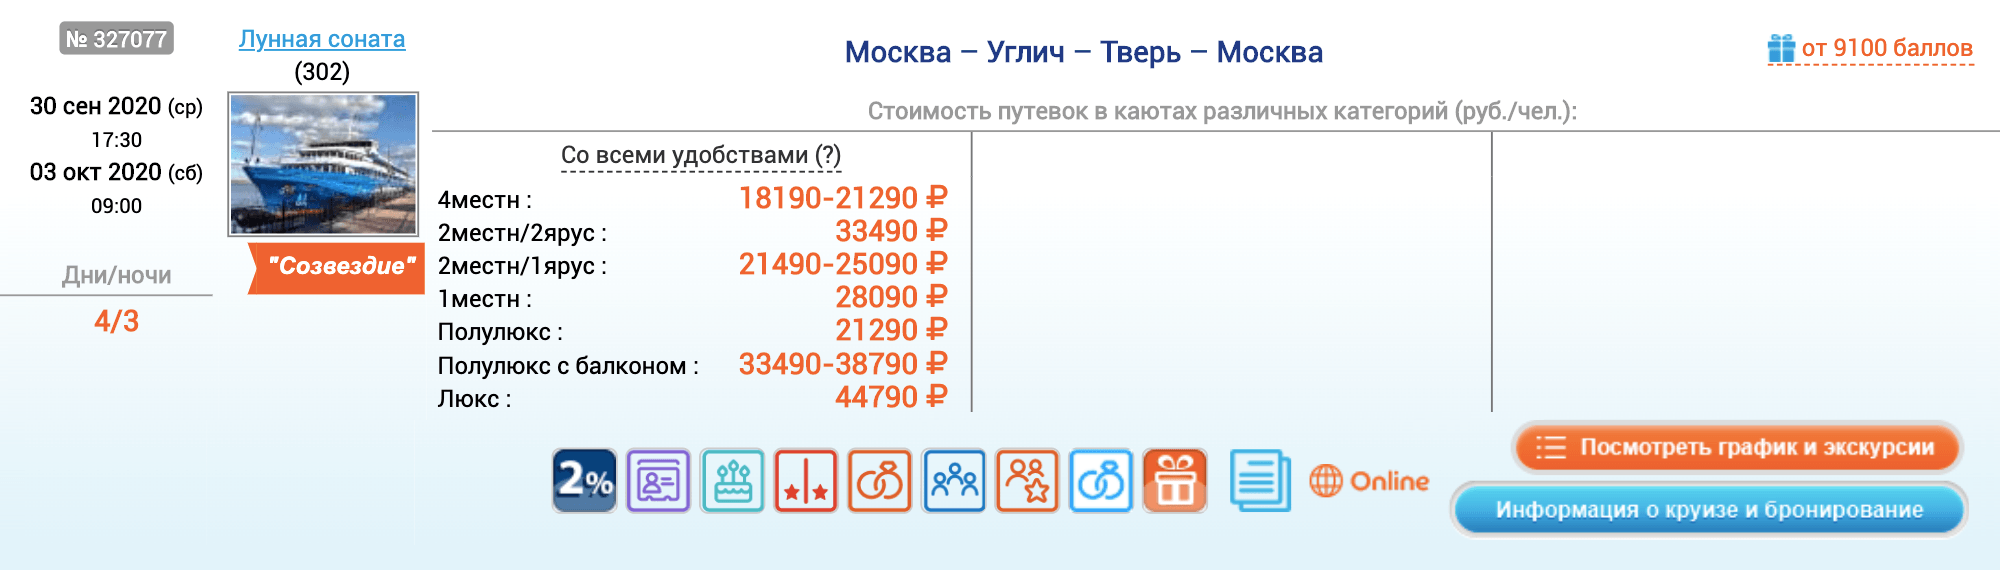 Осенью 2020 года можно съездить по маршруту Москва — Углич — Тверь — Москва. Билеты стоят от 17 490 ₽